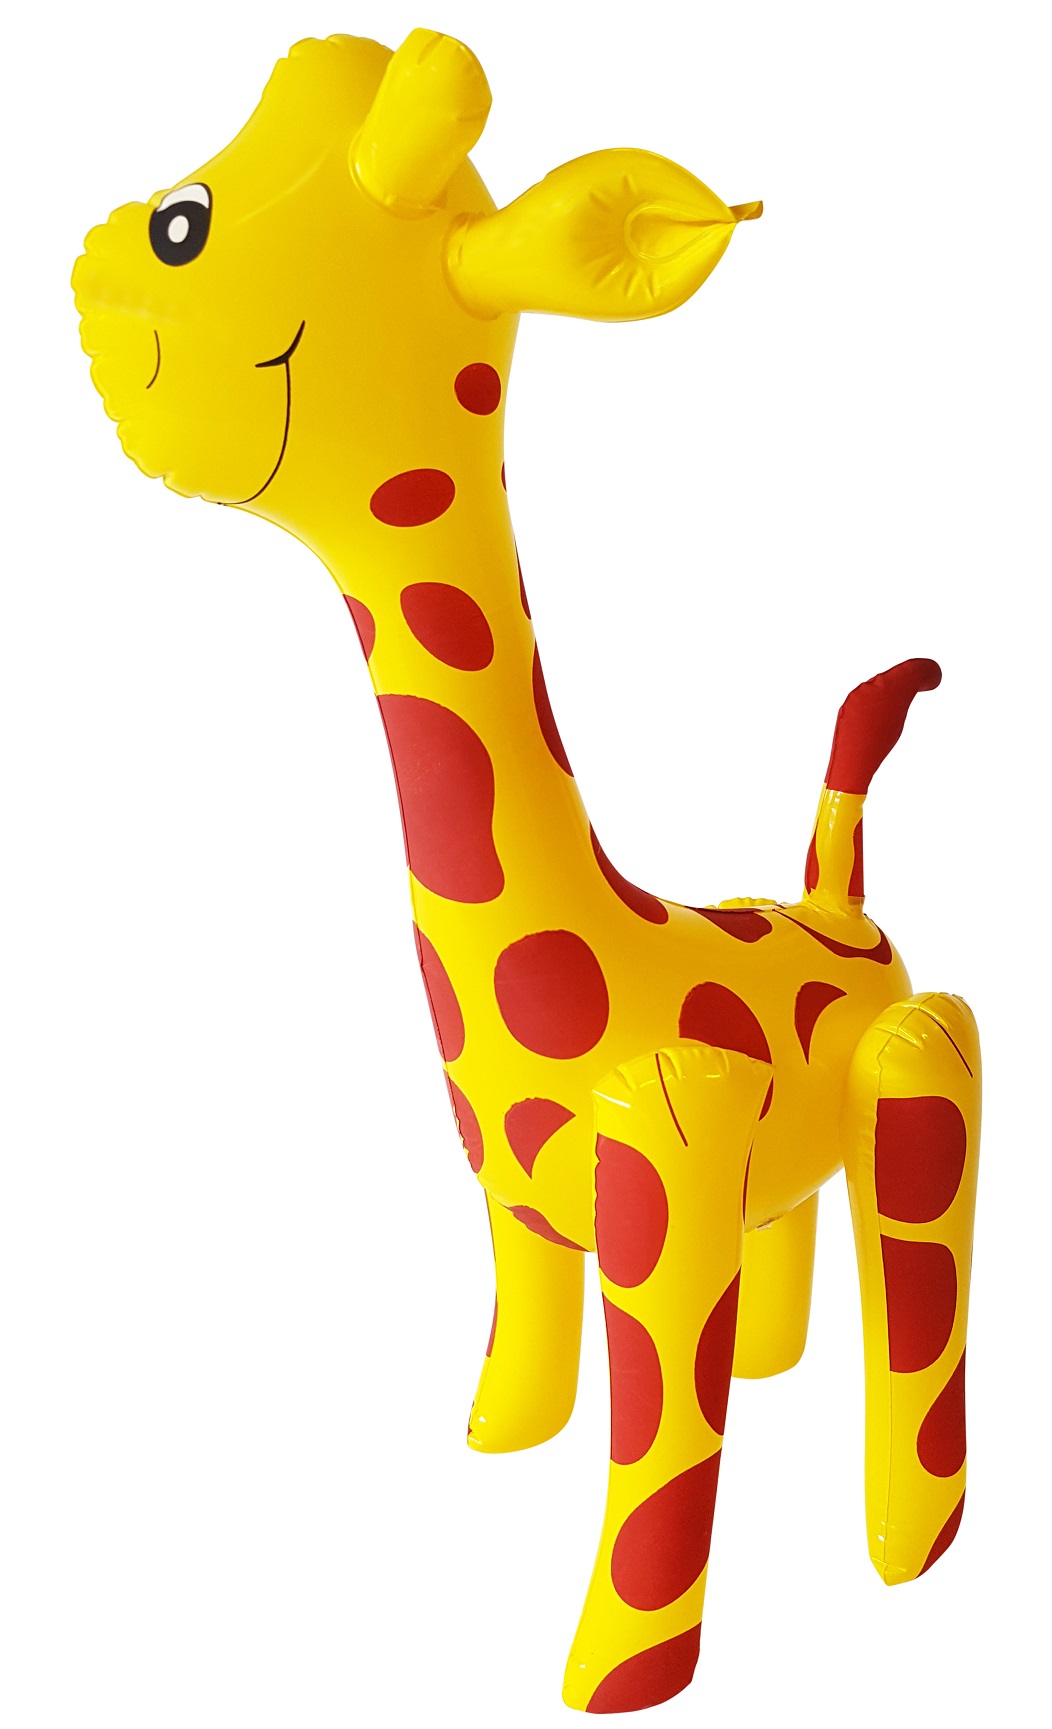 kan niet zien Station oase Opblaasbare Giraffe 53cm en opblasdieren kopen bij Kunstpalm.nl